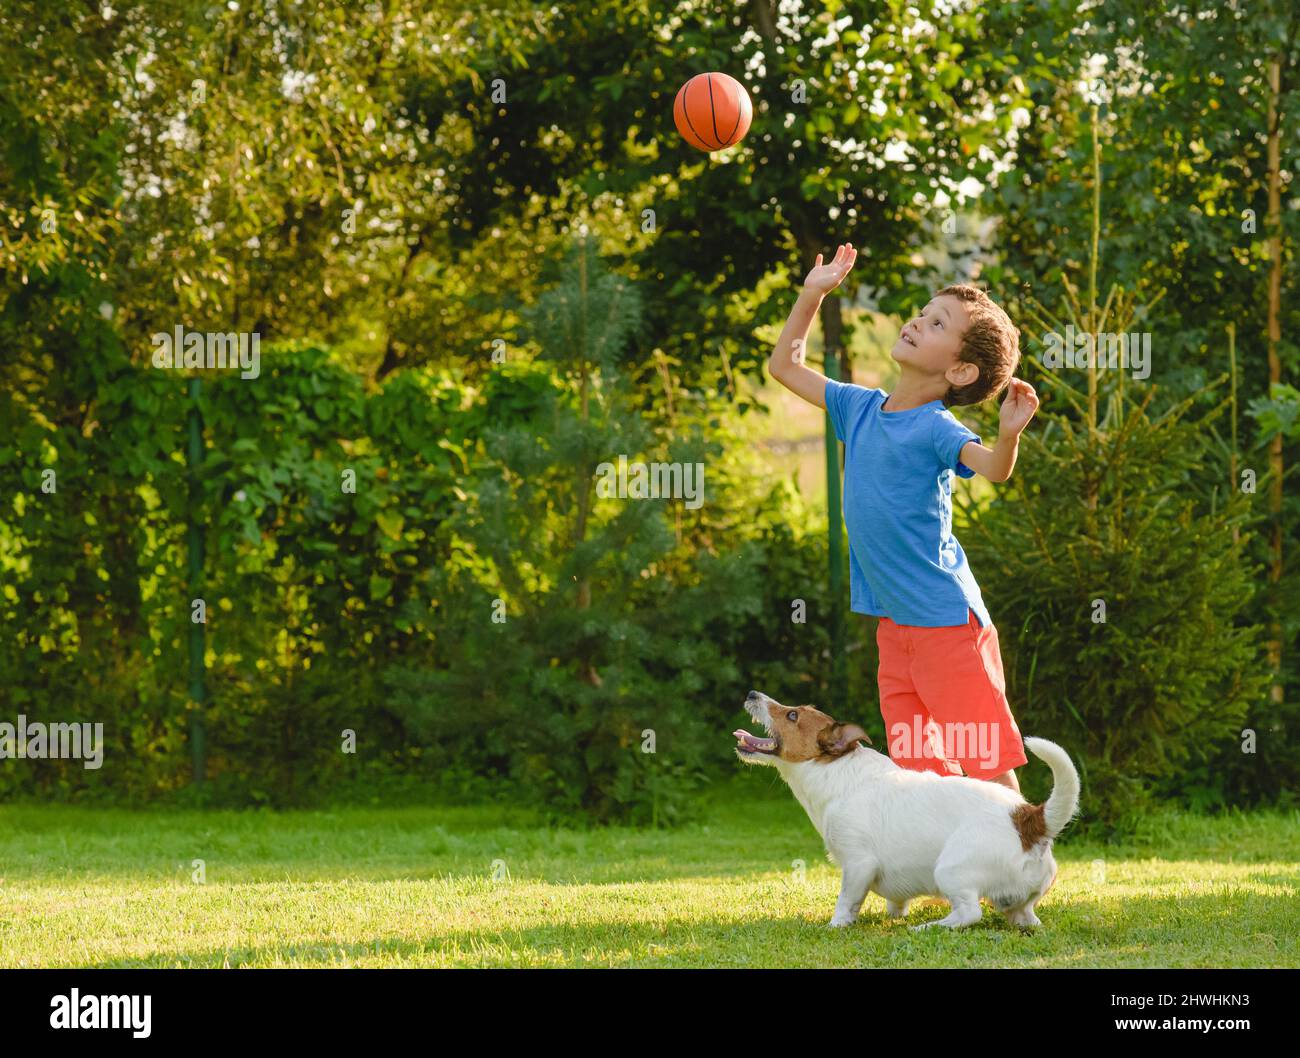 Les enfants et les chiens jouent à un jeu de basket-ball de loisir en plein air le jour de l'été Banque D'Images